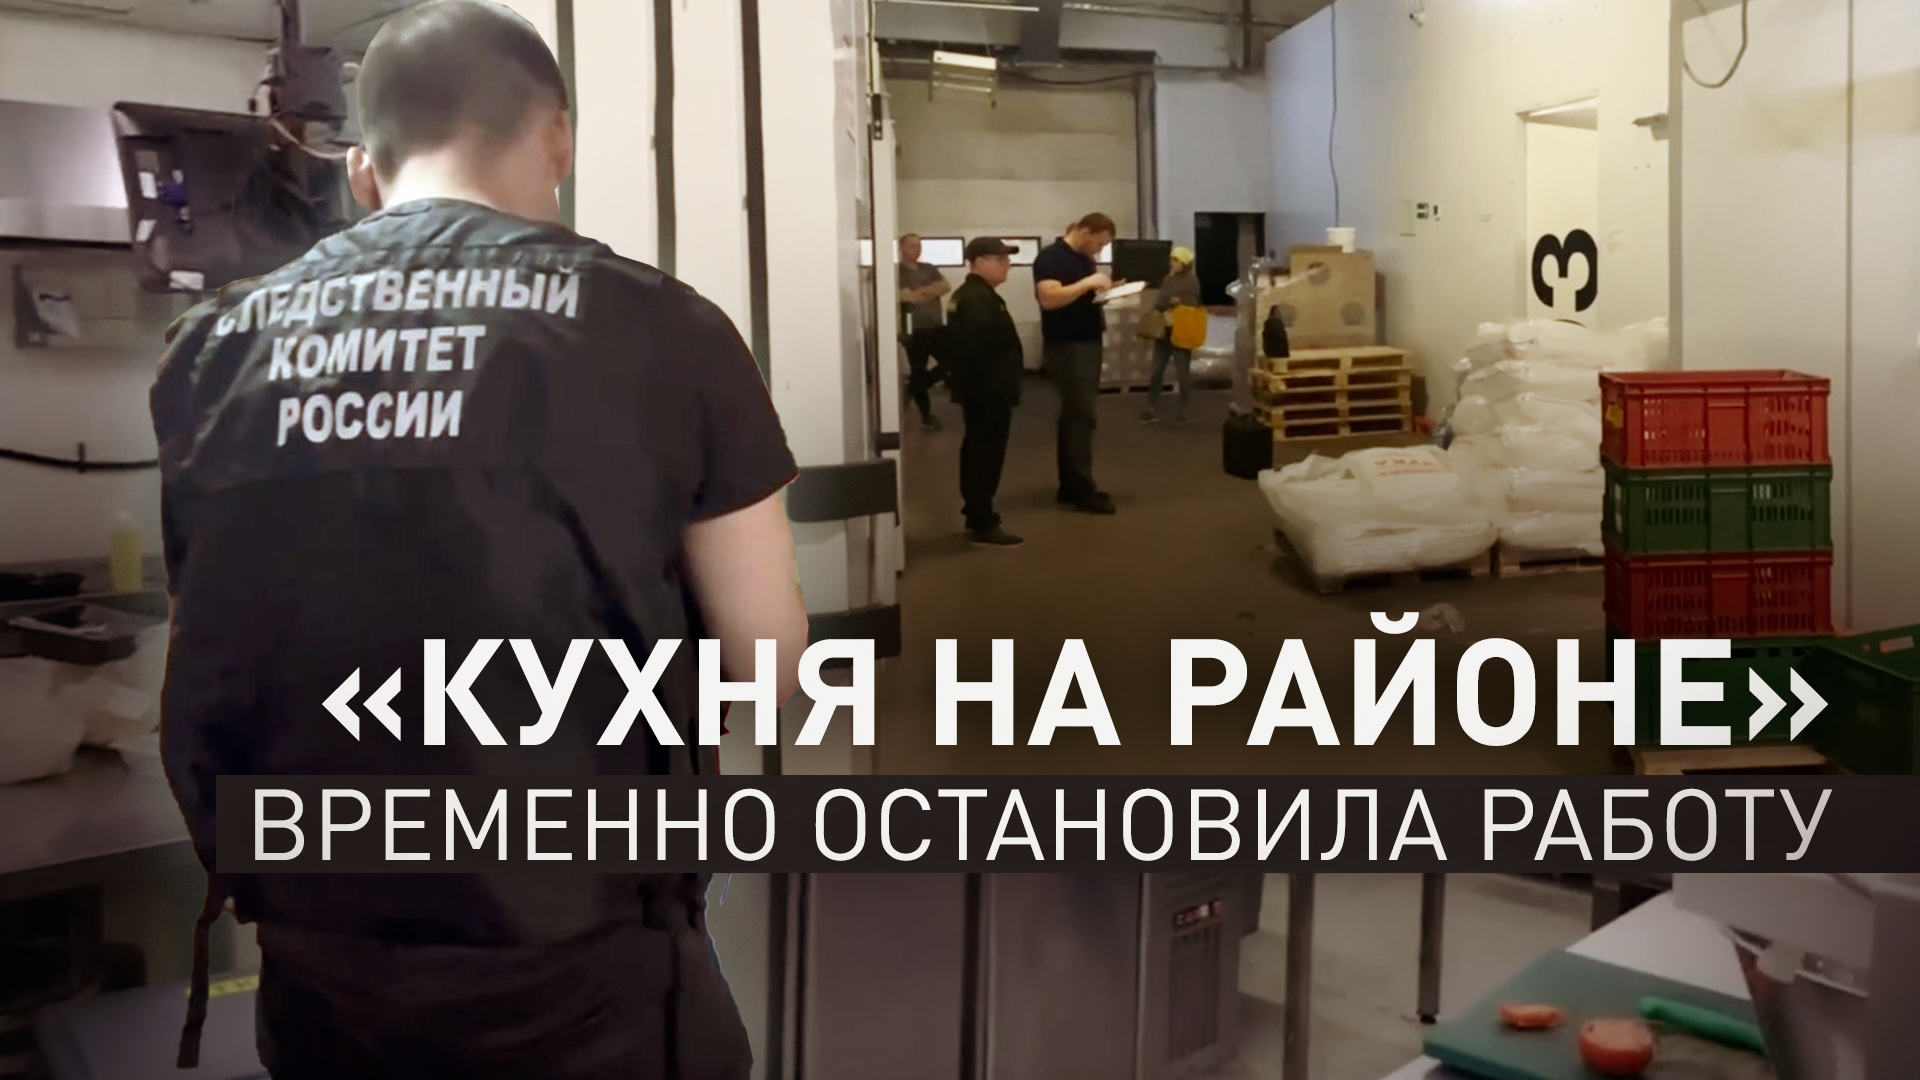 «Кухня на районе» временно остановила работу приложения после отравления жителей Москвы